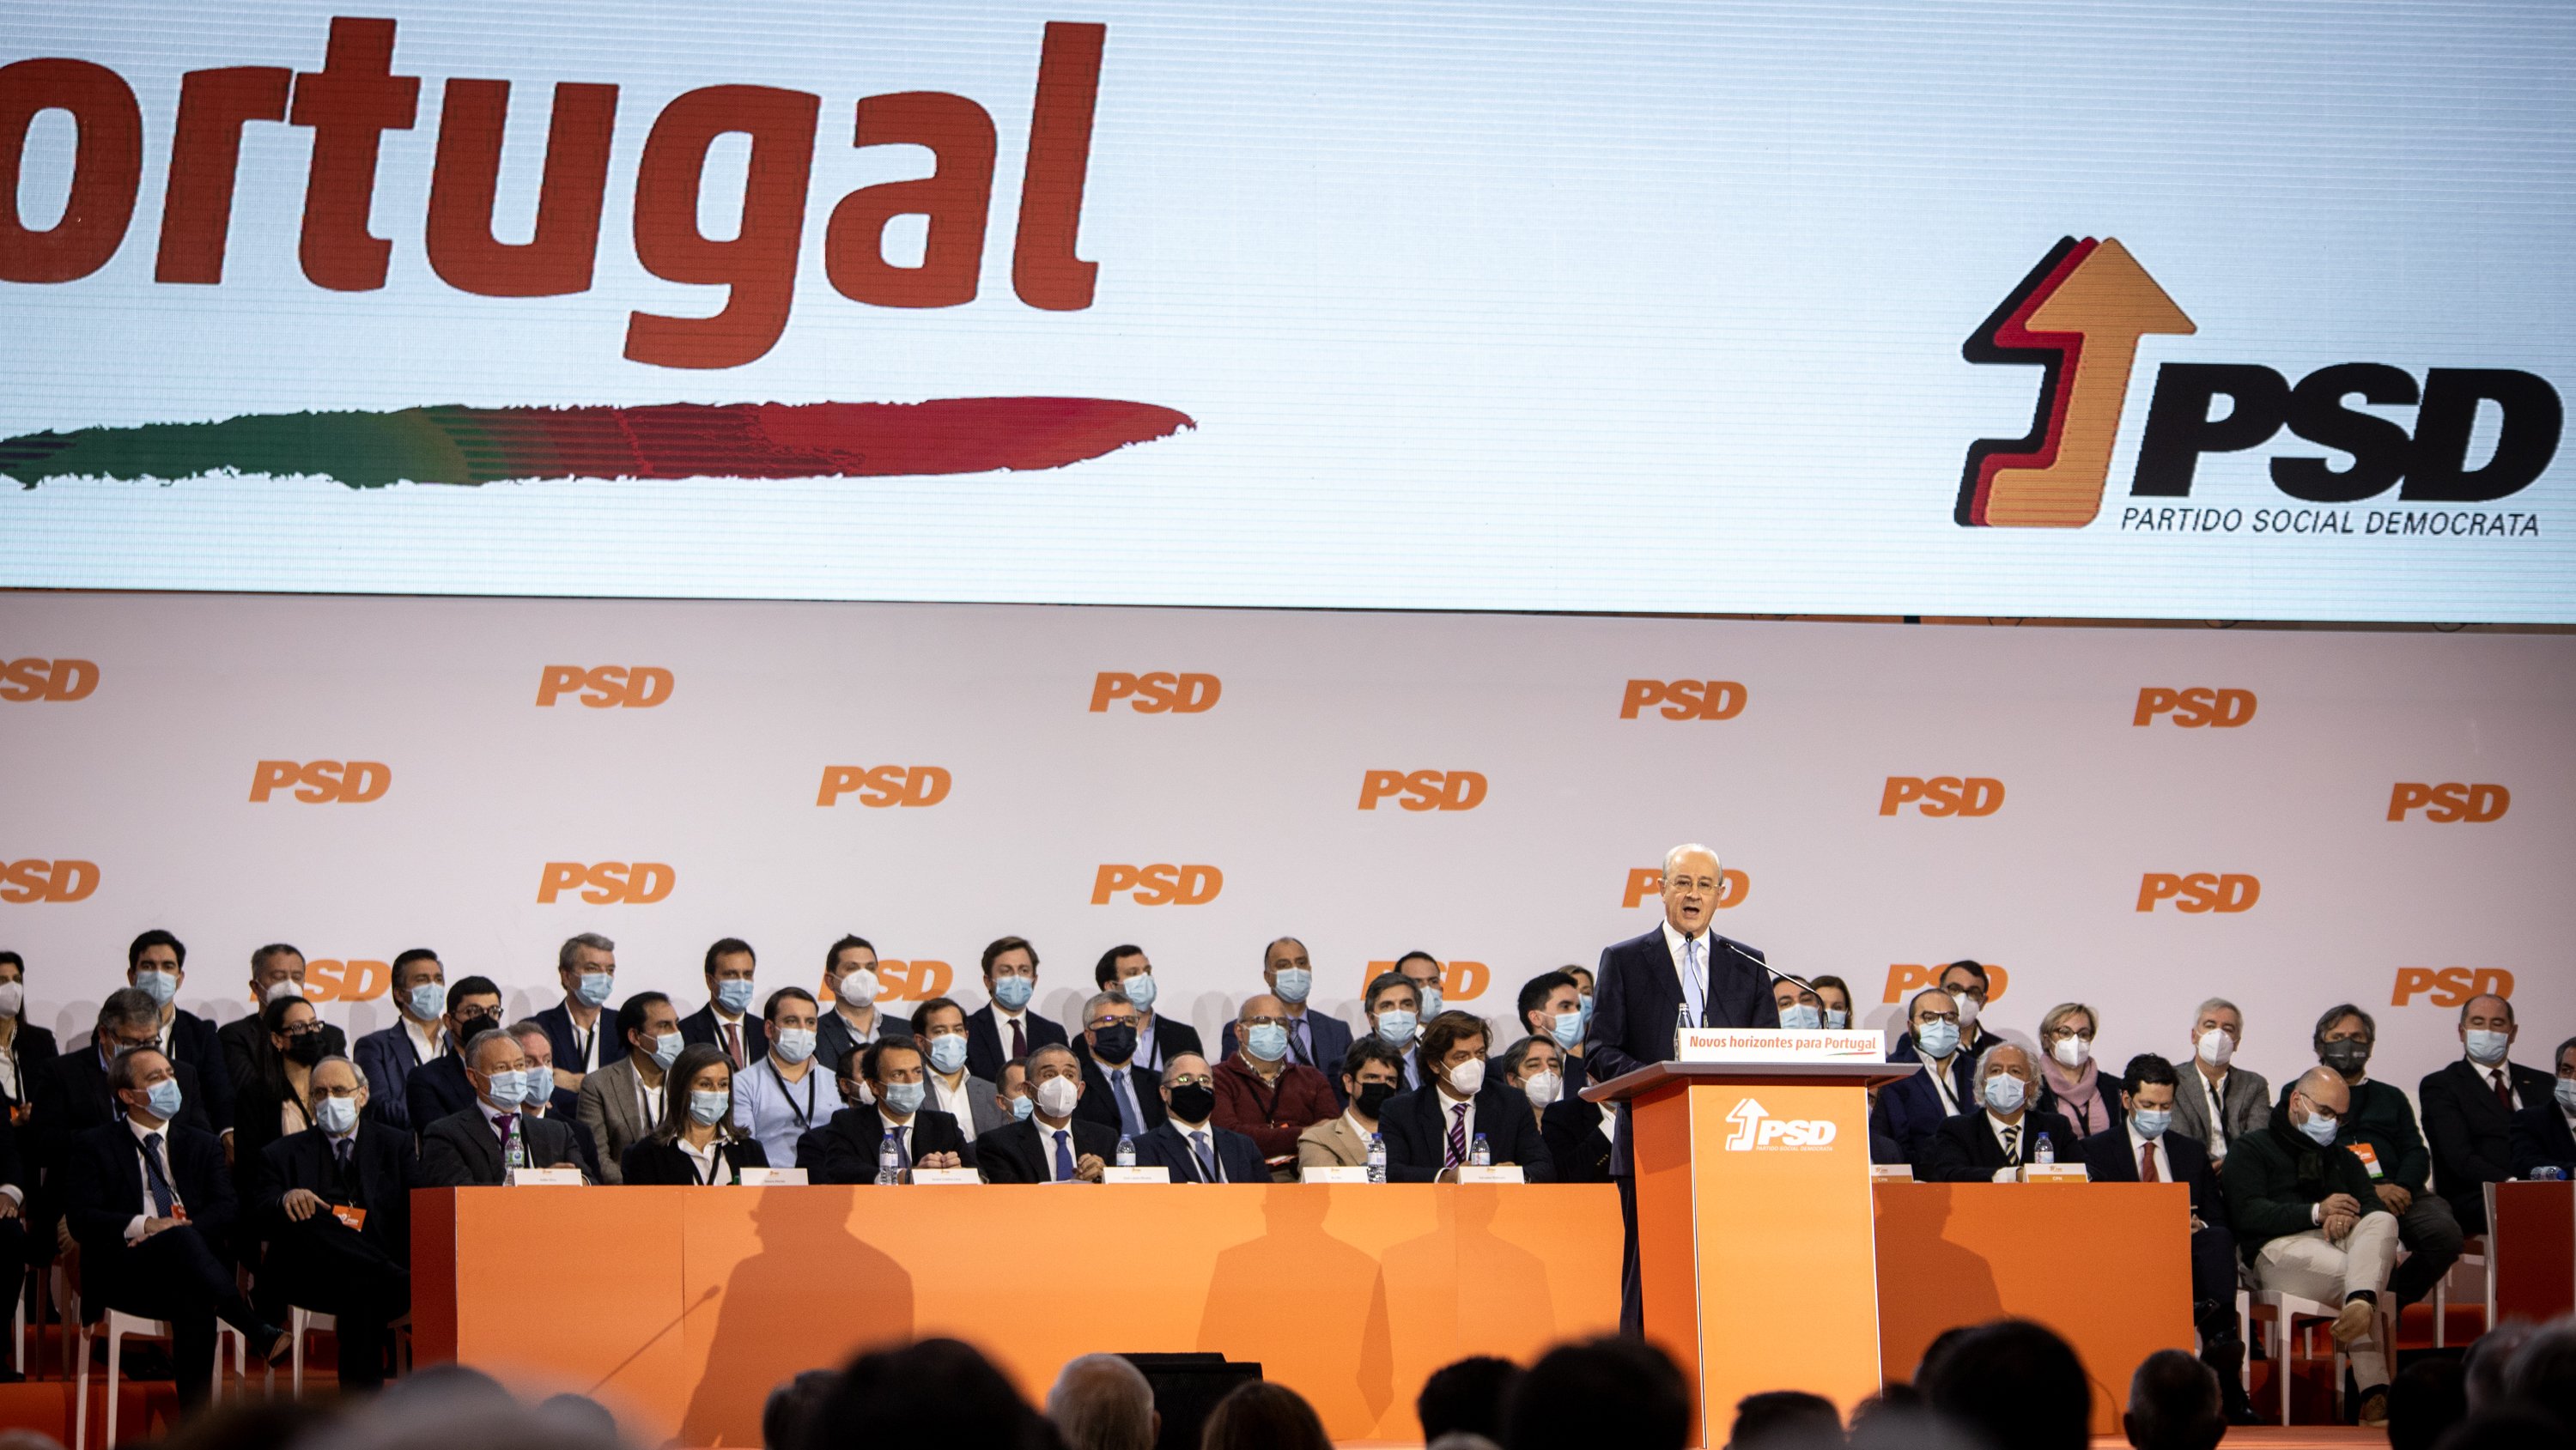 39º Congresso PSD (Partido Social Democrata) - Discurso de encerramento de Rui Rio, presidente do partido, ao terceiro e último dia de congresso. Santa Maria da Feira, Aveiro 19 de Dezembro de 2021 TOMÁS SILVA/OBSERVADOR